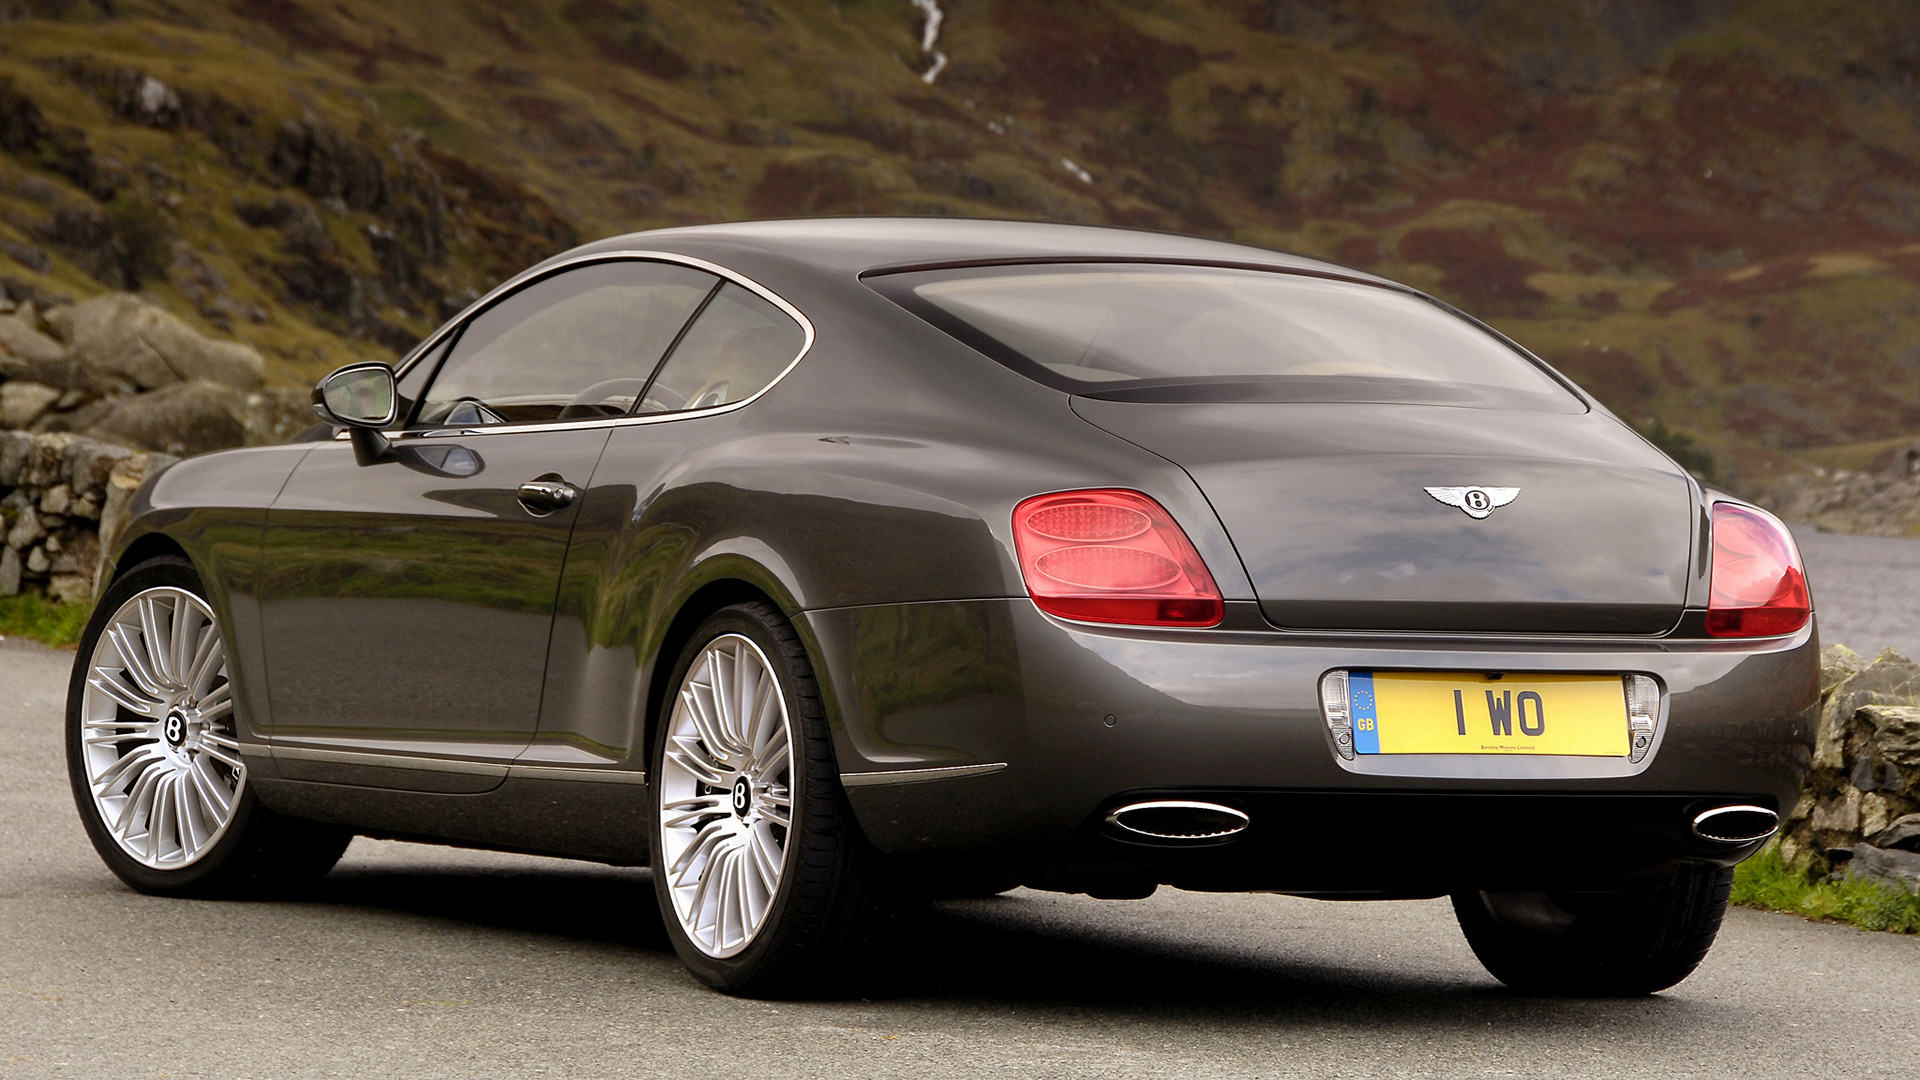 Descarga gratuita de fondo de pantalla para móvil de Bentley, Coche, Gran Turismo, Vehículos, Retroceso Rápido, Coupé, Bentley Continental Gt Velocidad, Coche Gris.